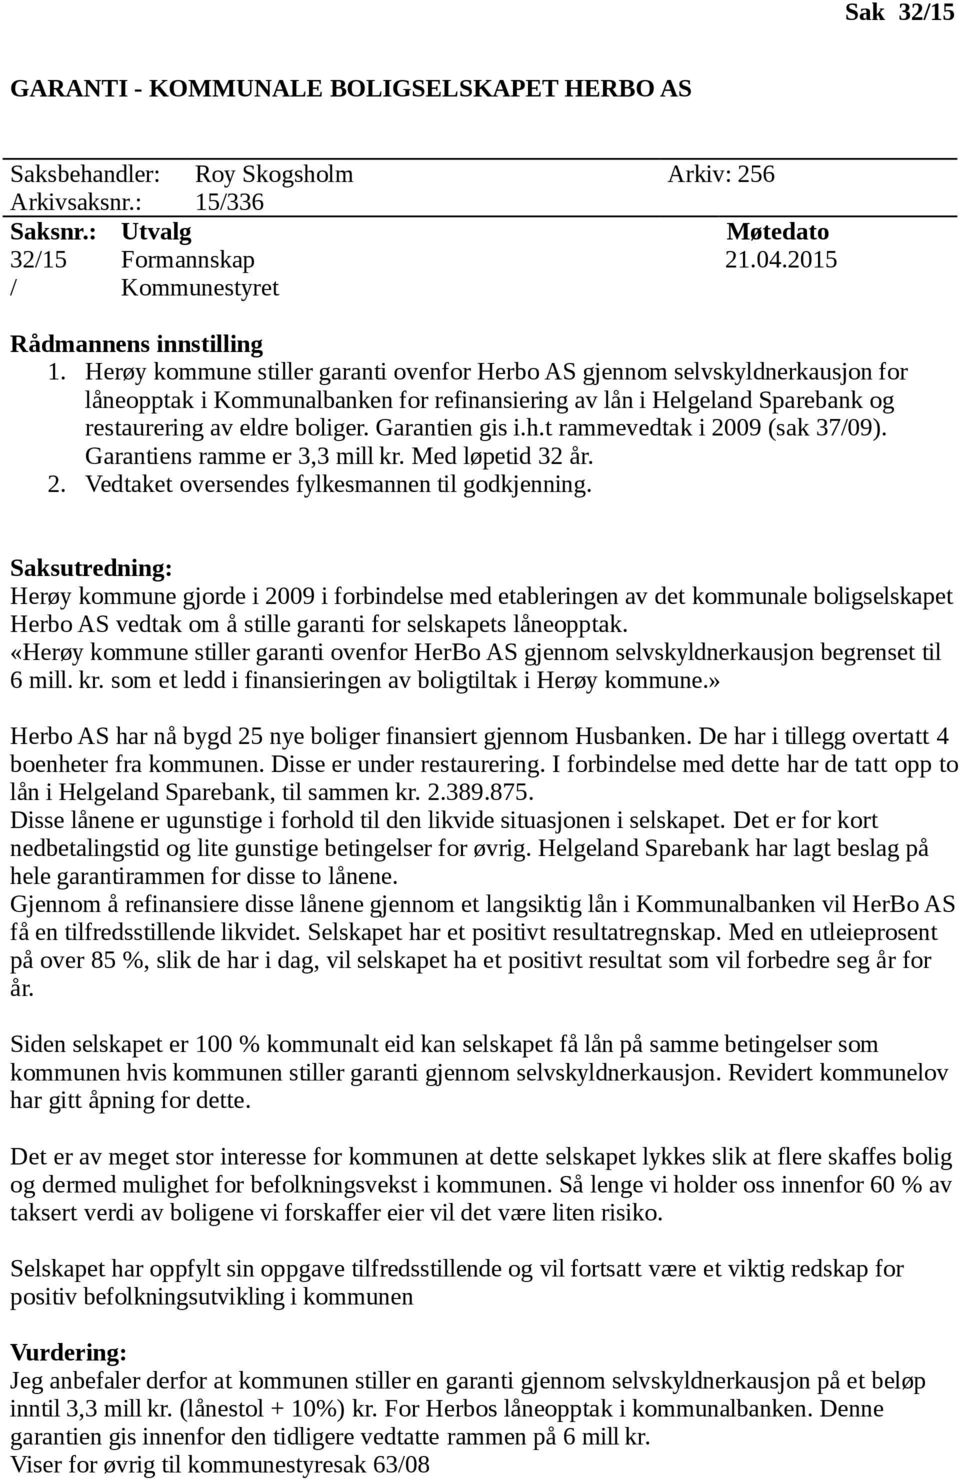 Herøy kommune stiller garanti ovenfor Herbo AS gjennom selvskyldnerkausjon for låneopptak i Kommunalbanken for refinansiering av lån i Helgeland Sparebank og restaurering av eldre boliger.